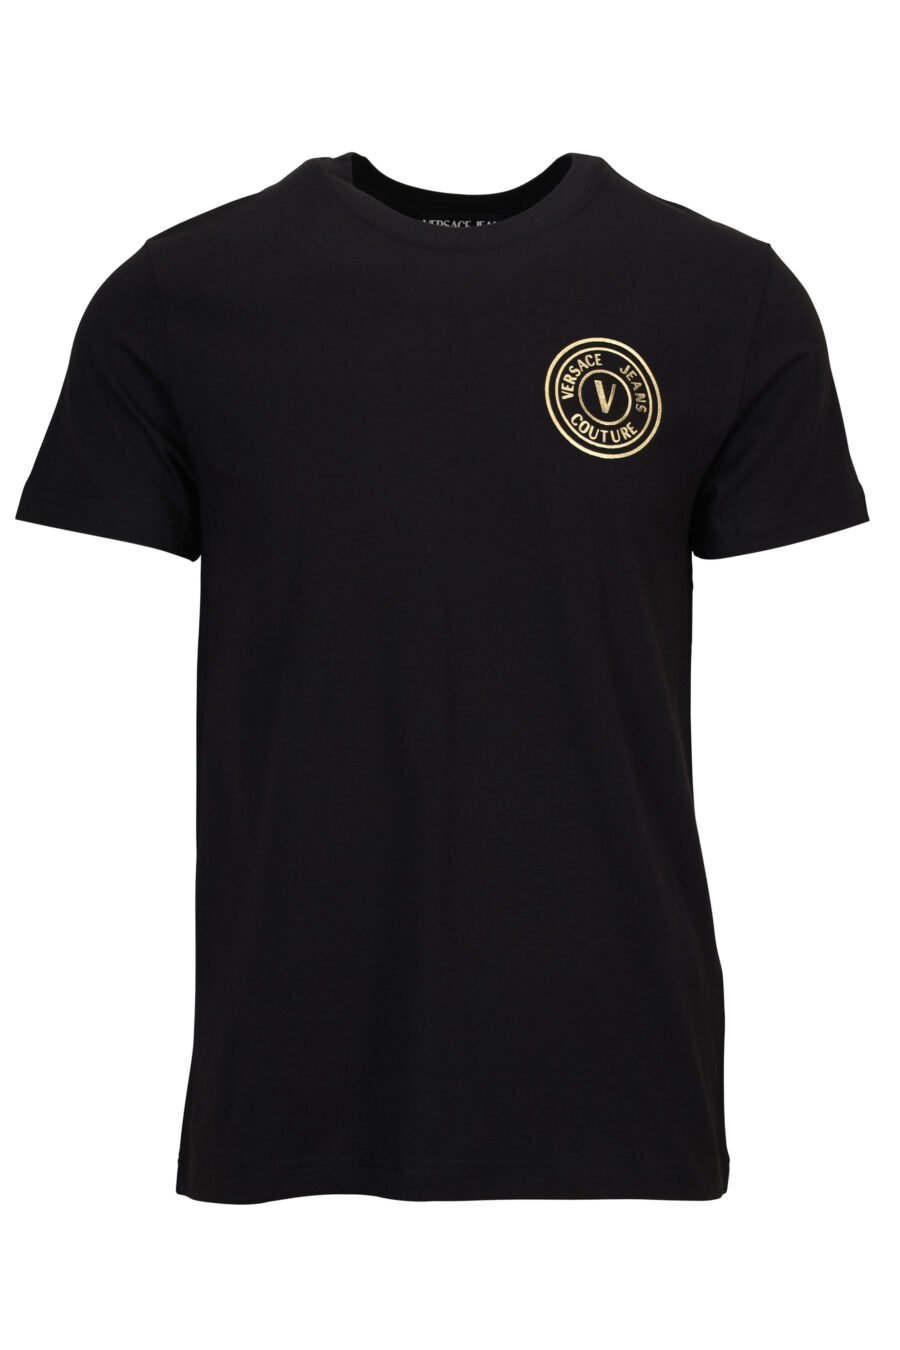 Camiseta negra con minilogo circular brillante dorado - 8052019597592